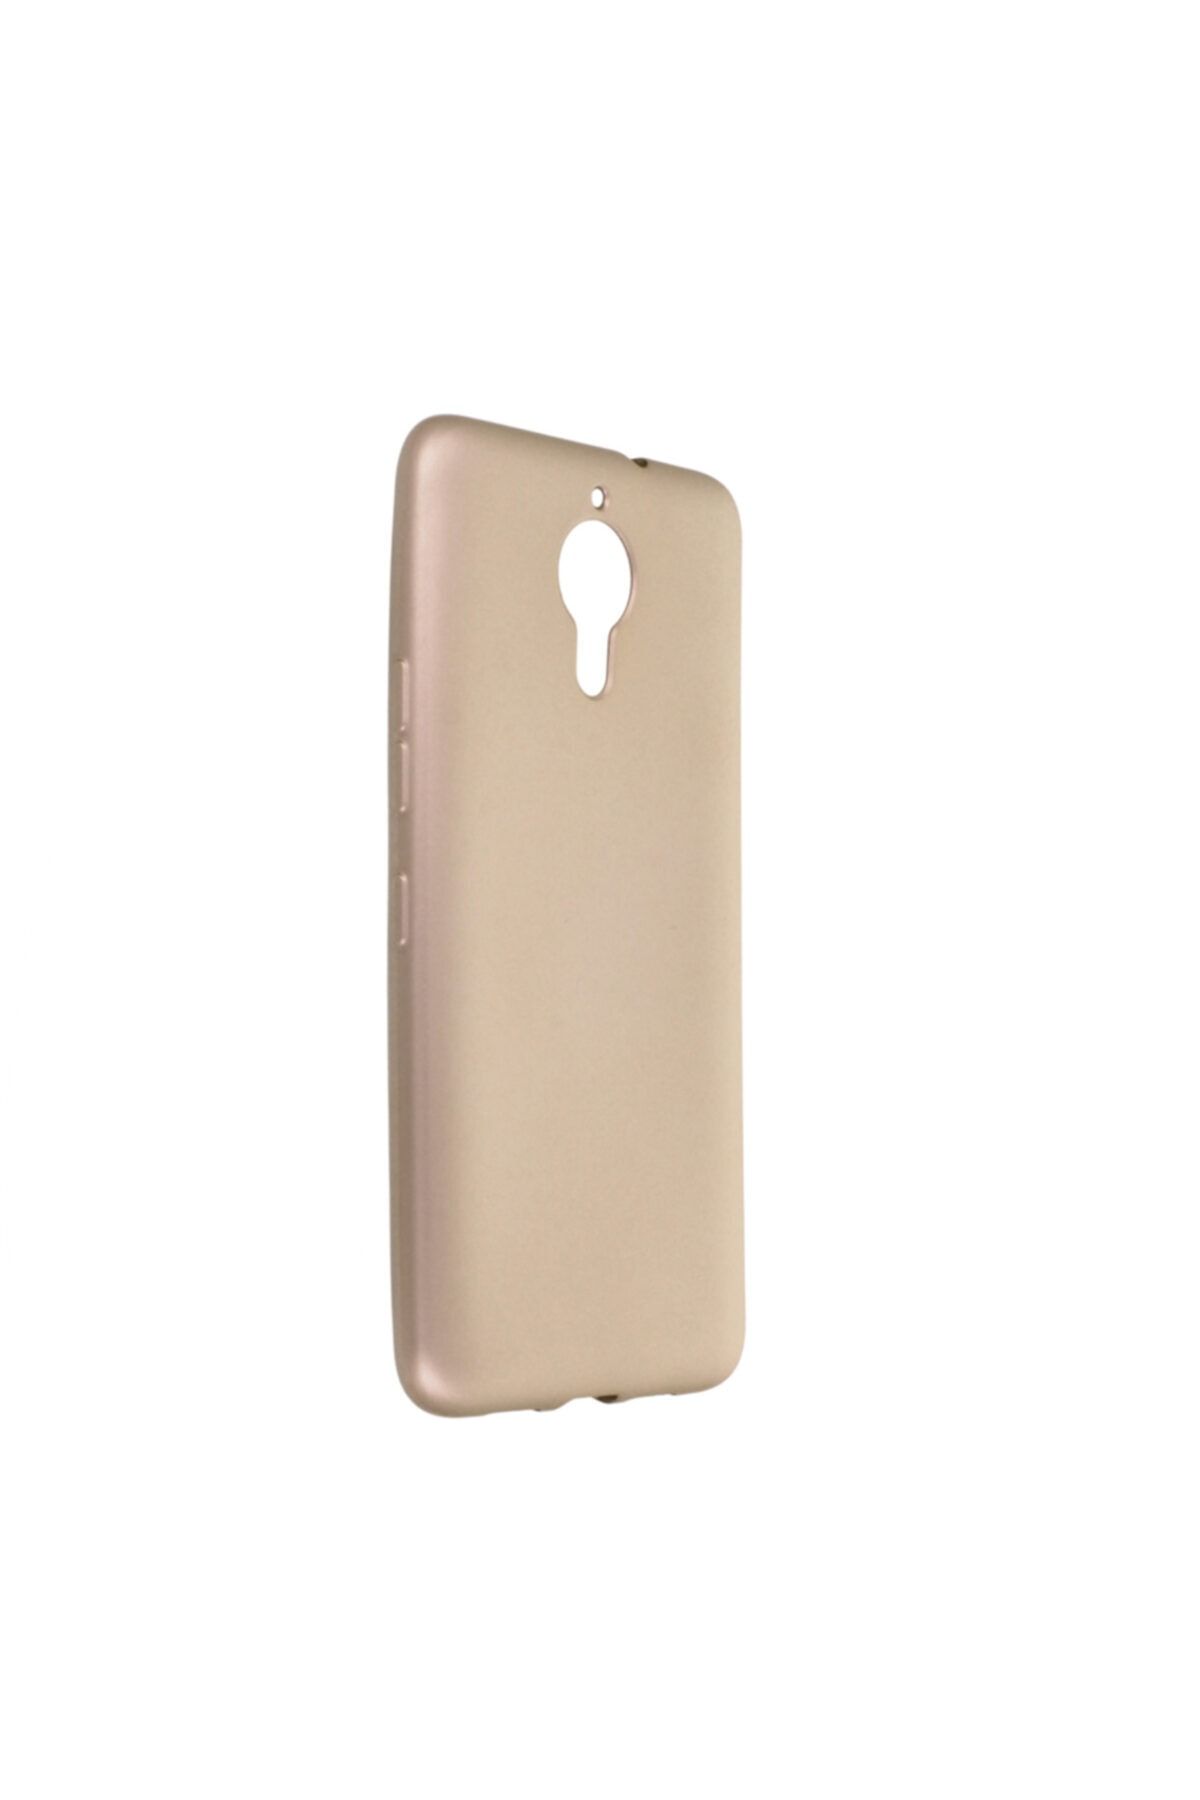 General Mobile 5 Plus Uyumlu Kılıf Yumuşak Pürüzsüz Esnek New Style Case Gold